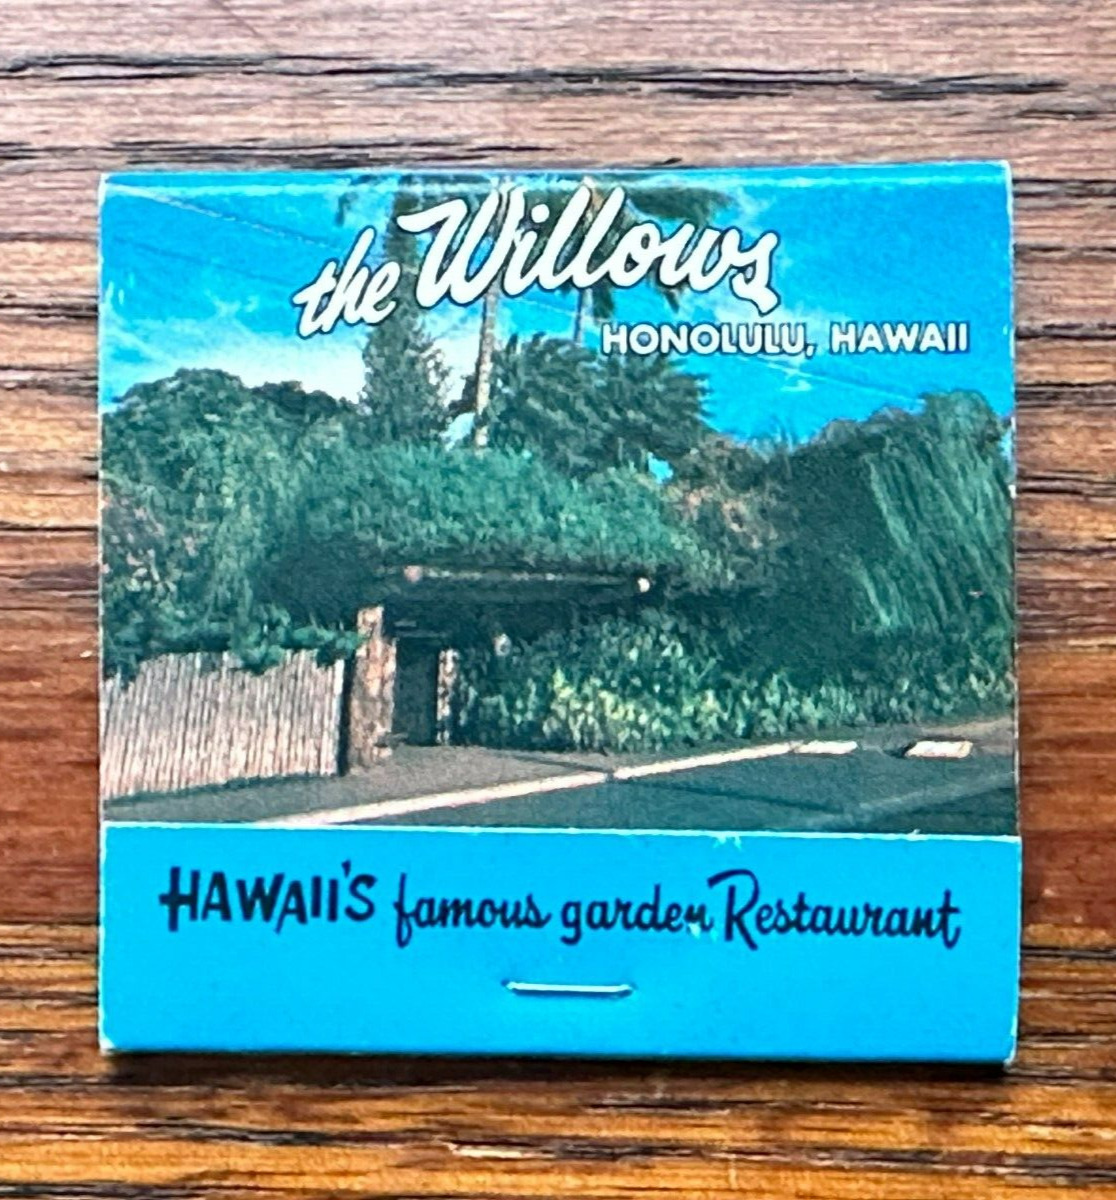 THE WILLOWS RESTAURANT MATCHBOOK Honolulu Hawaii Famous Garden Restaurant FULL